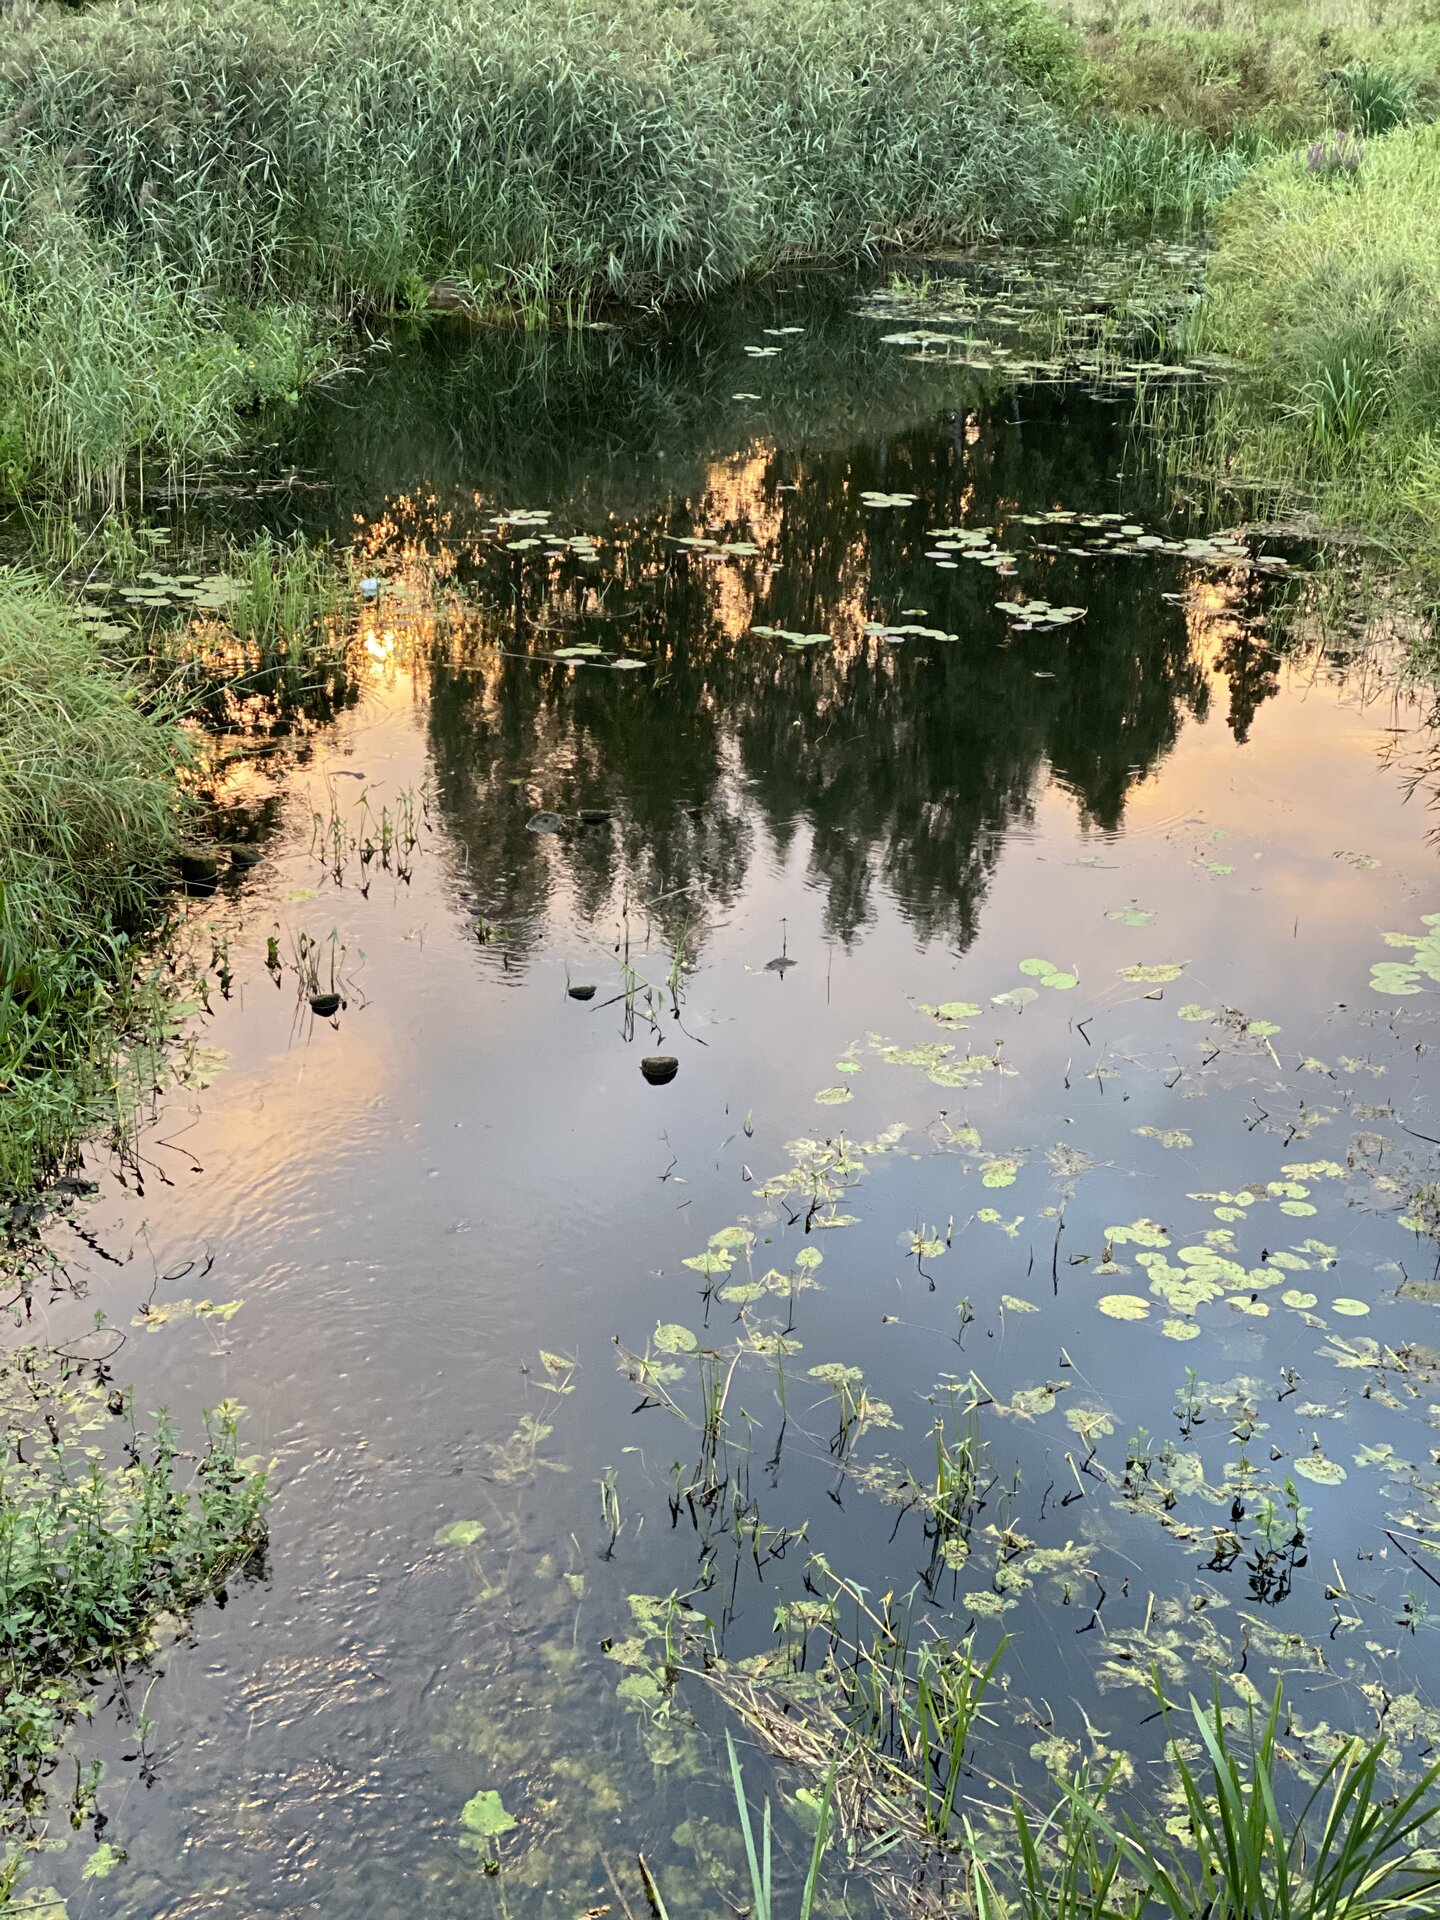 Kääpa river in summer